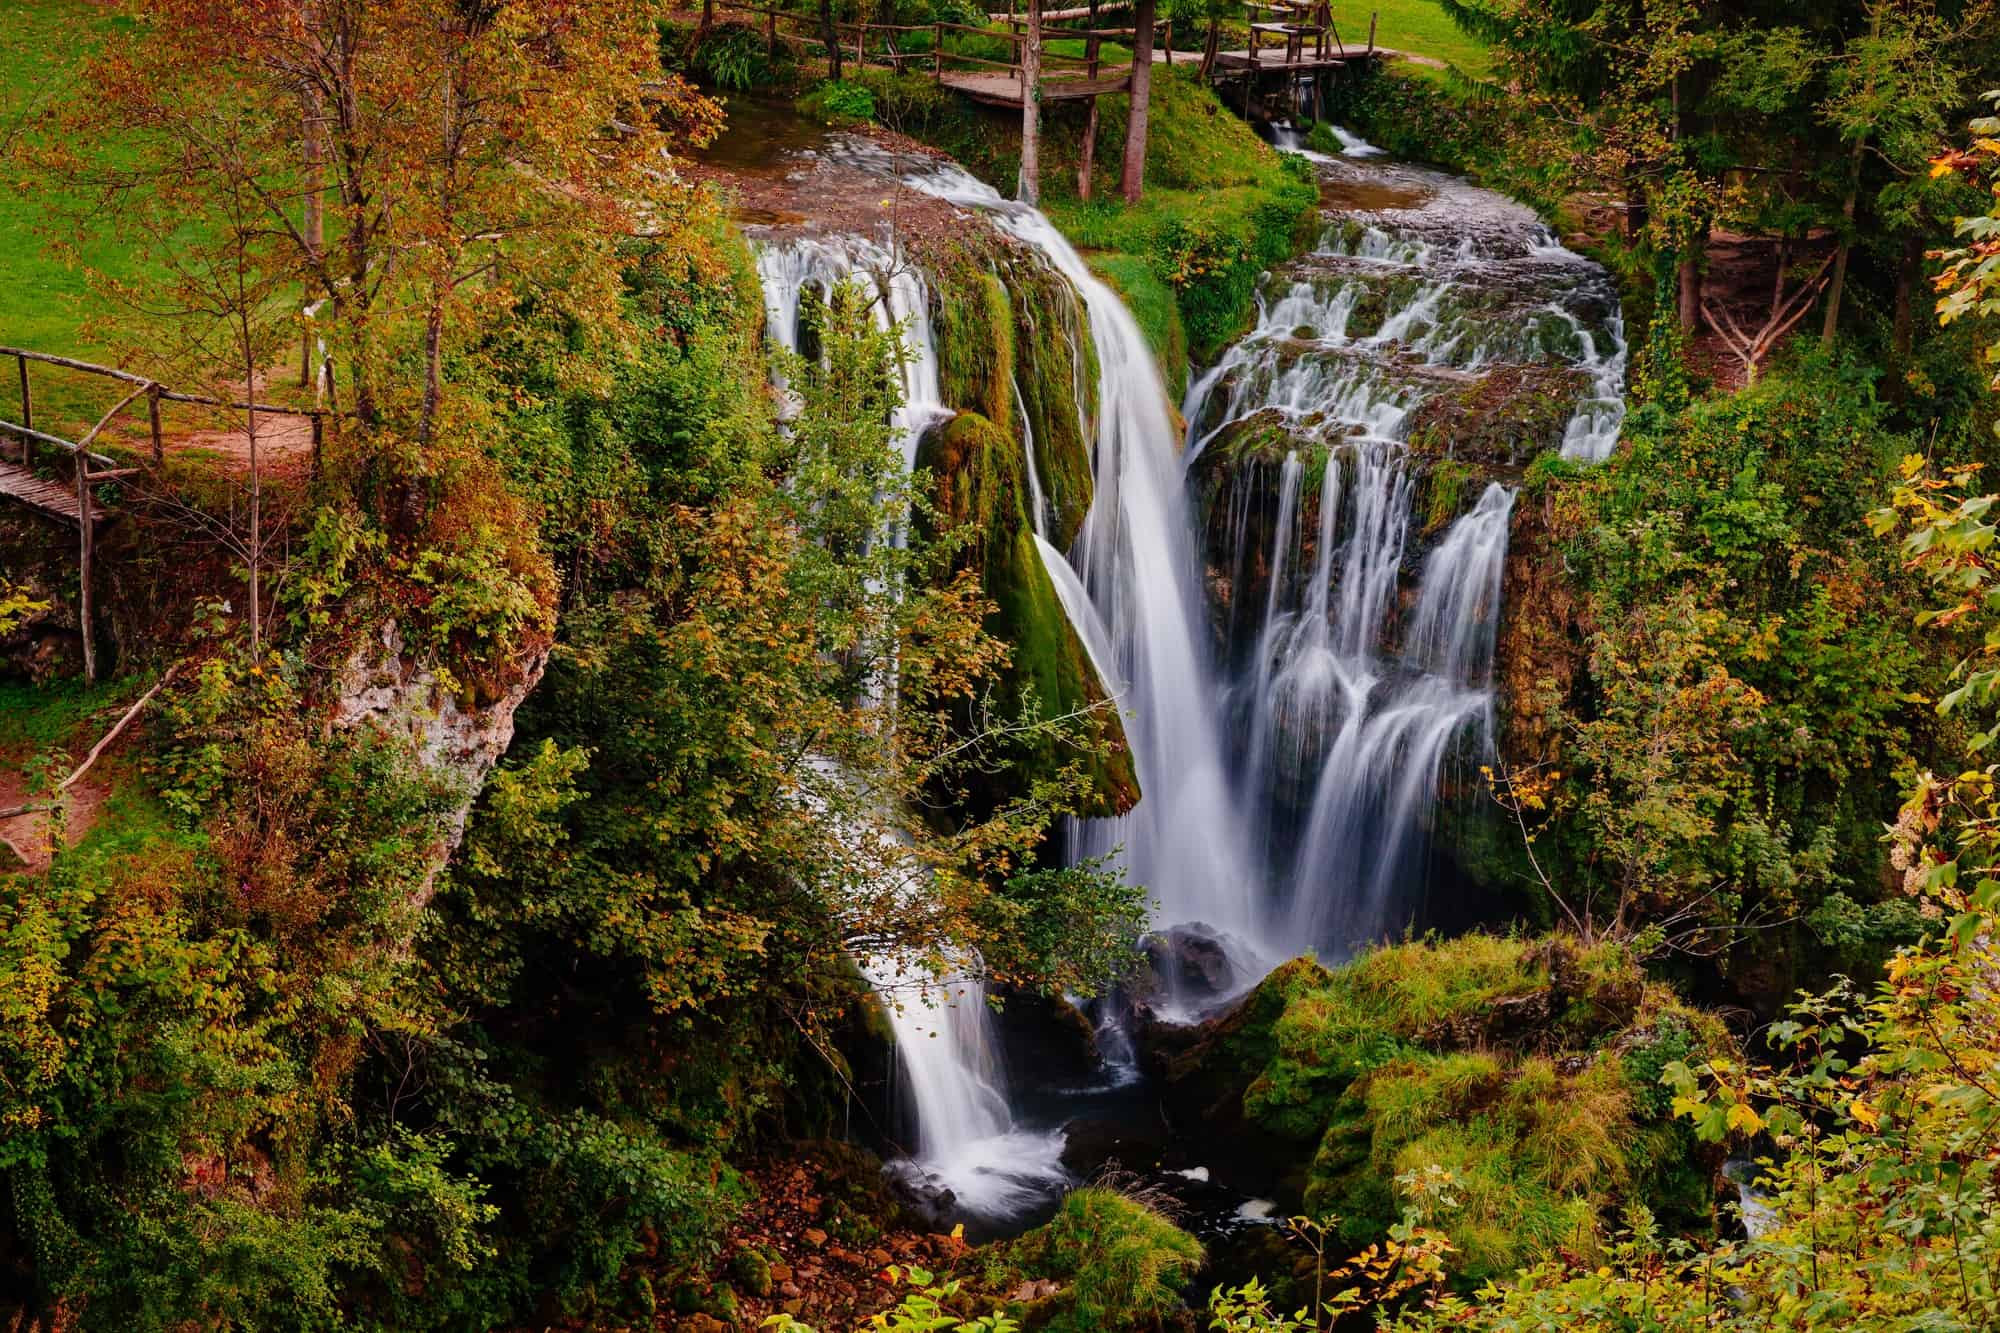 Rastoke Waterfalls